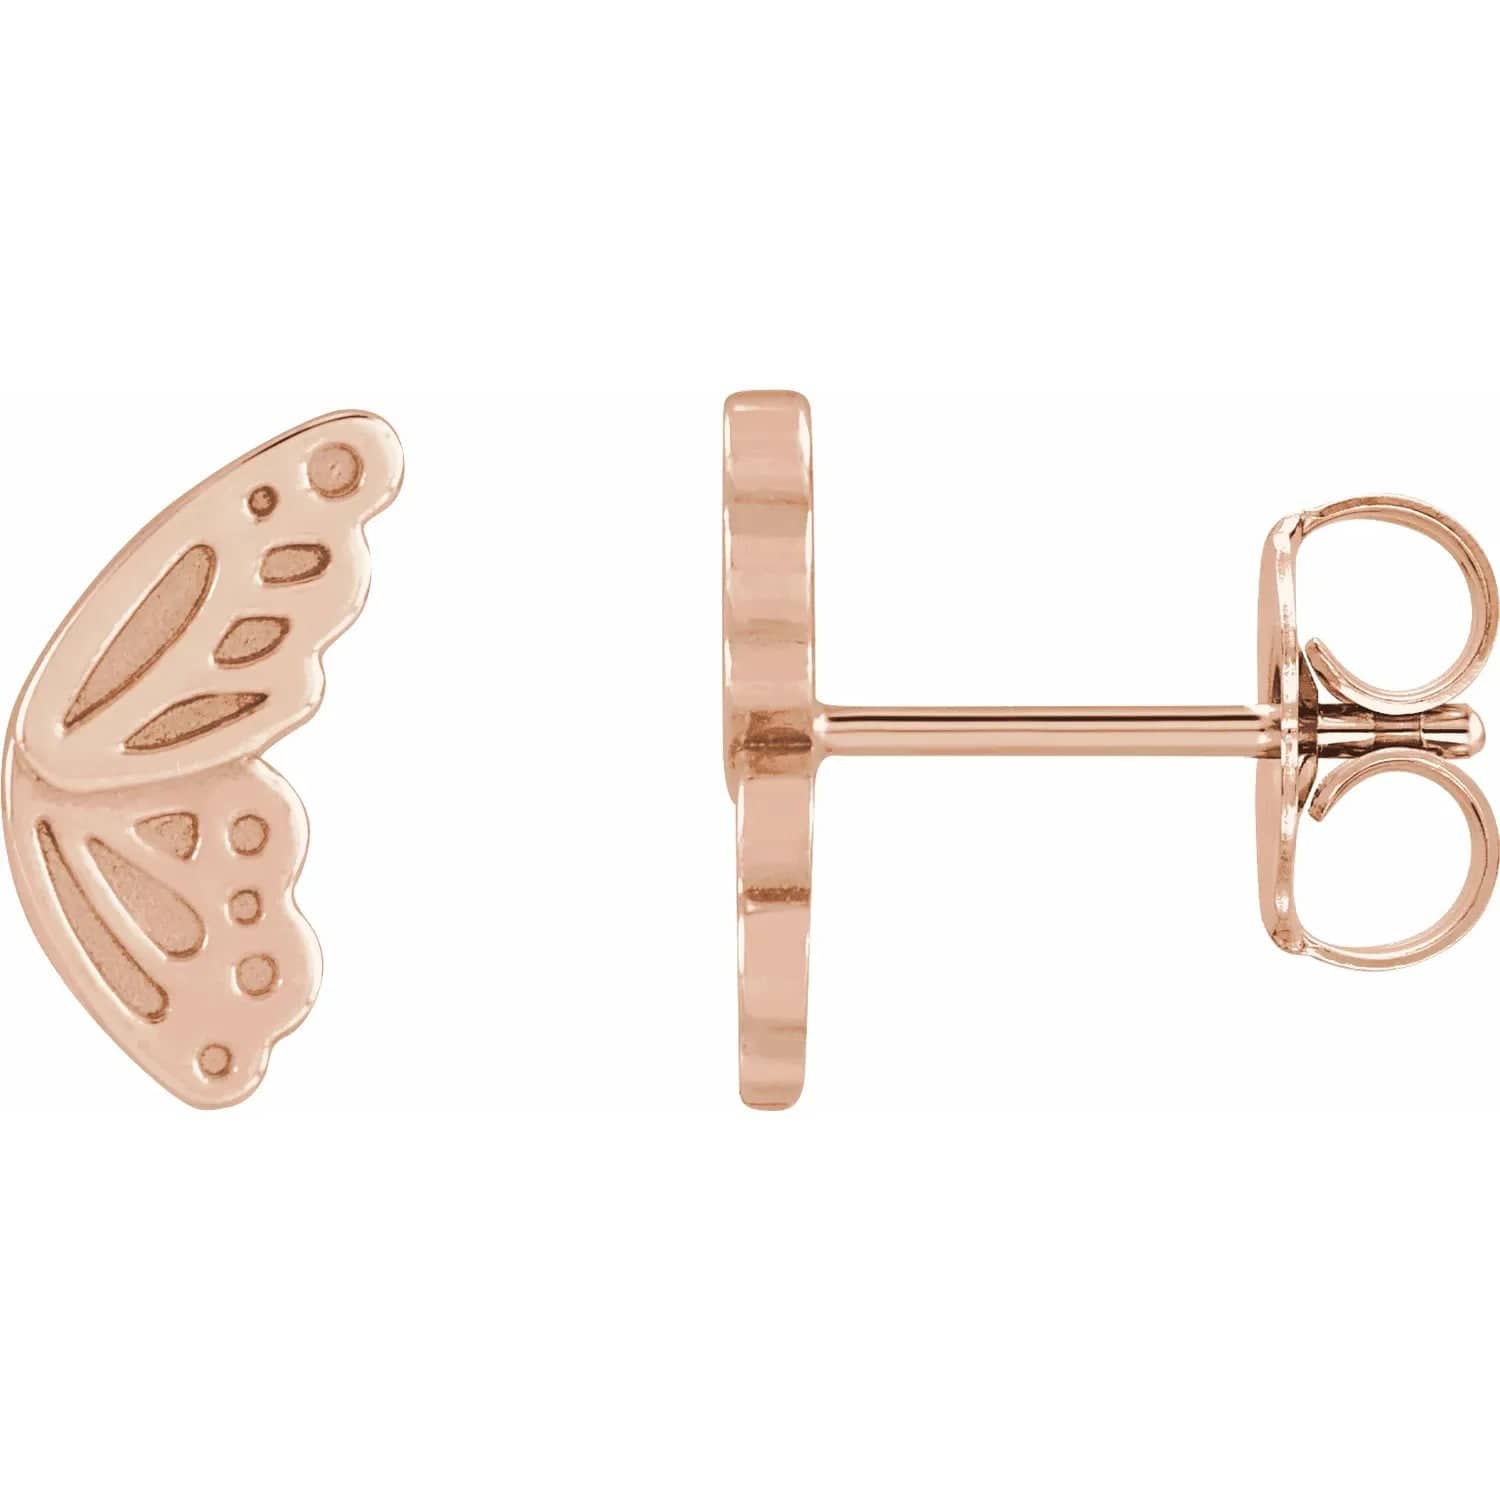 Butterfly Wing Earrings - Online Exclusive